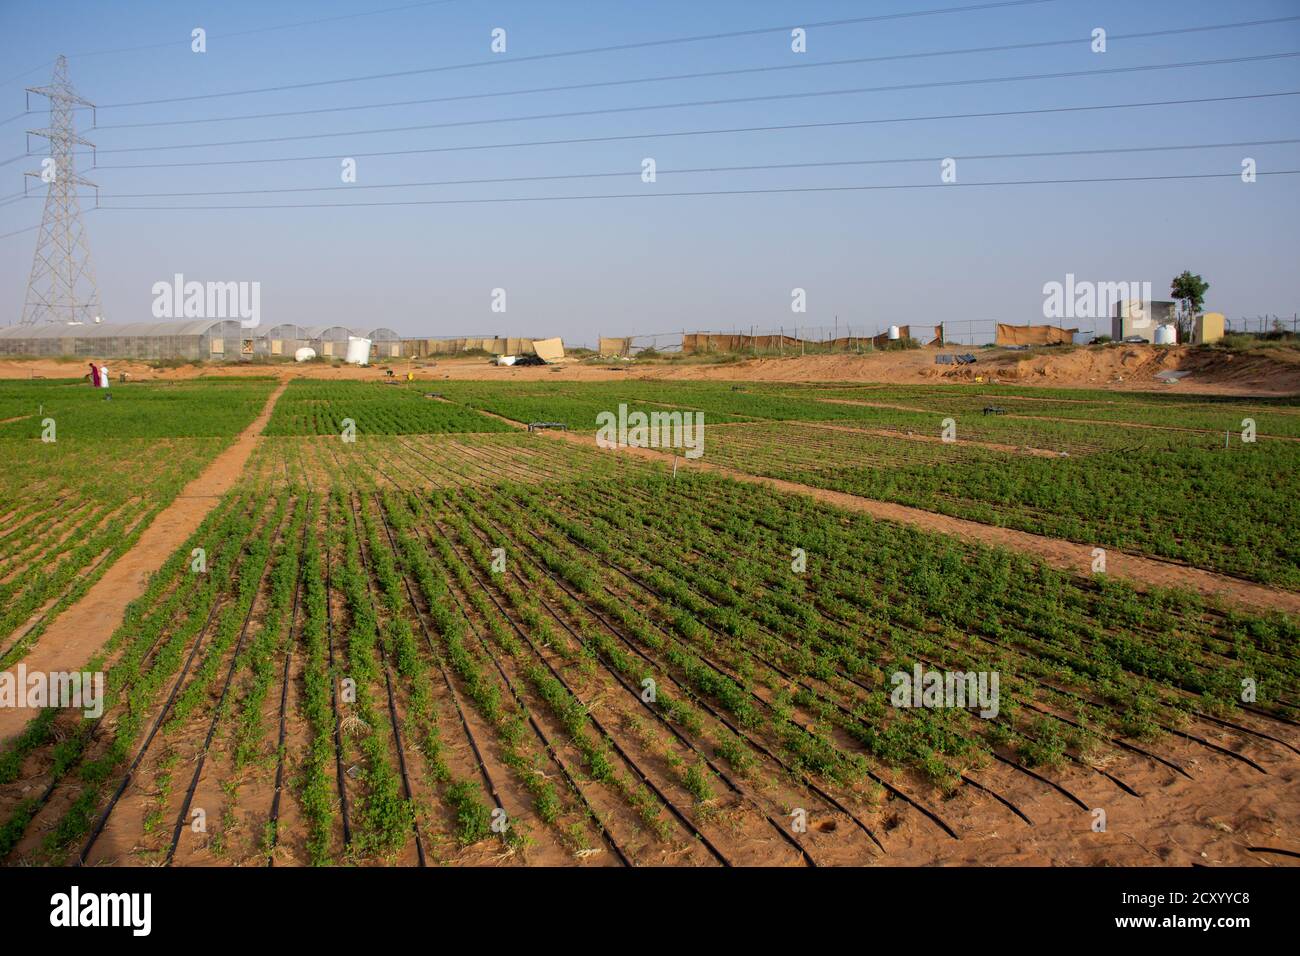 Desert Farm Kontrast zu grünen Pflanzen und blauen Himmel im Wüstensand in den Vereinigten Arabischen Emiraten (VAE). Kamelfutter wächst. Stockfoto